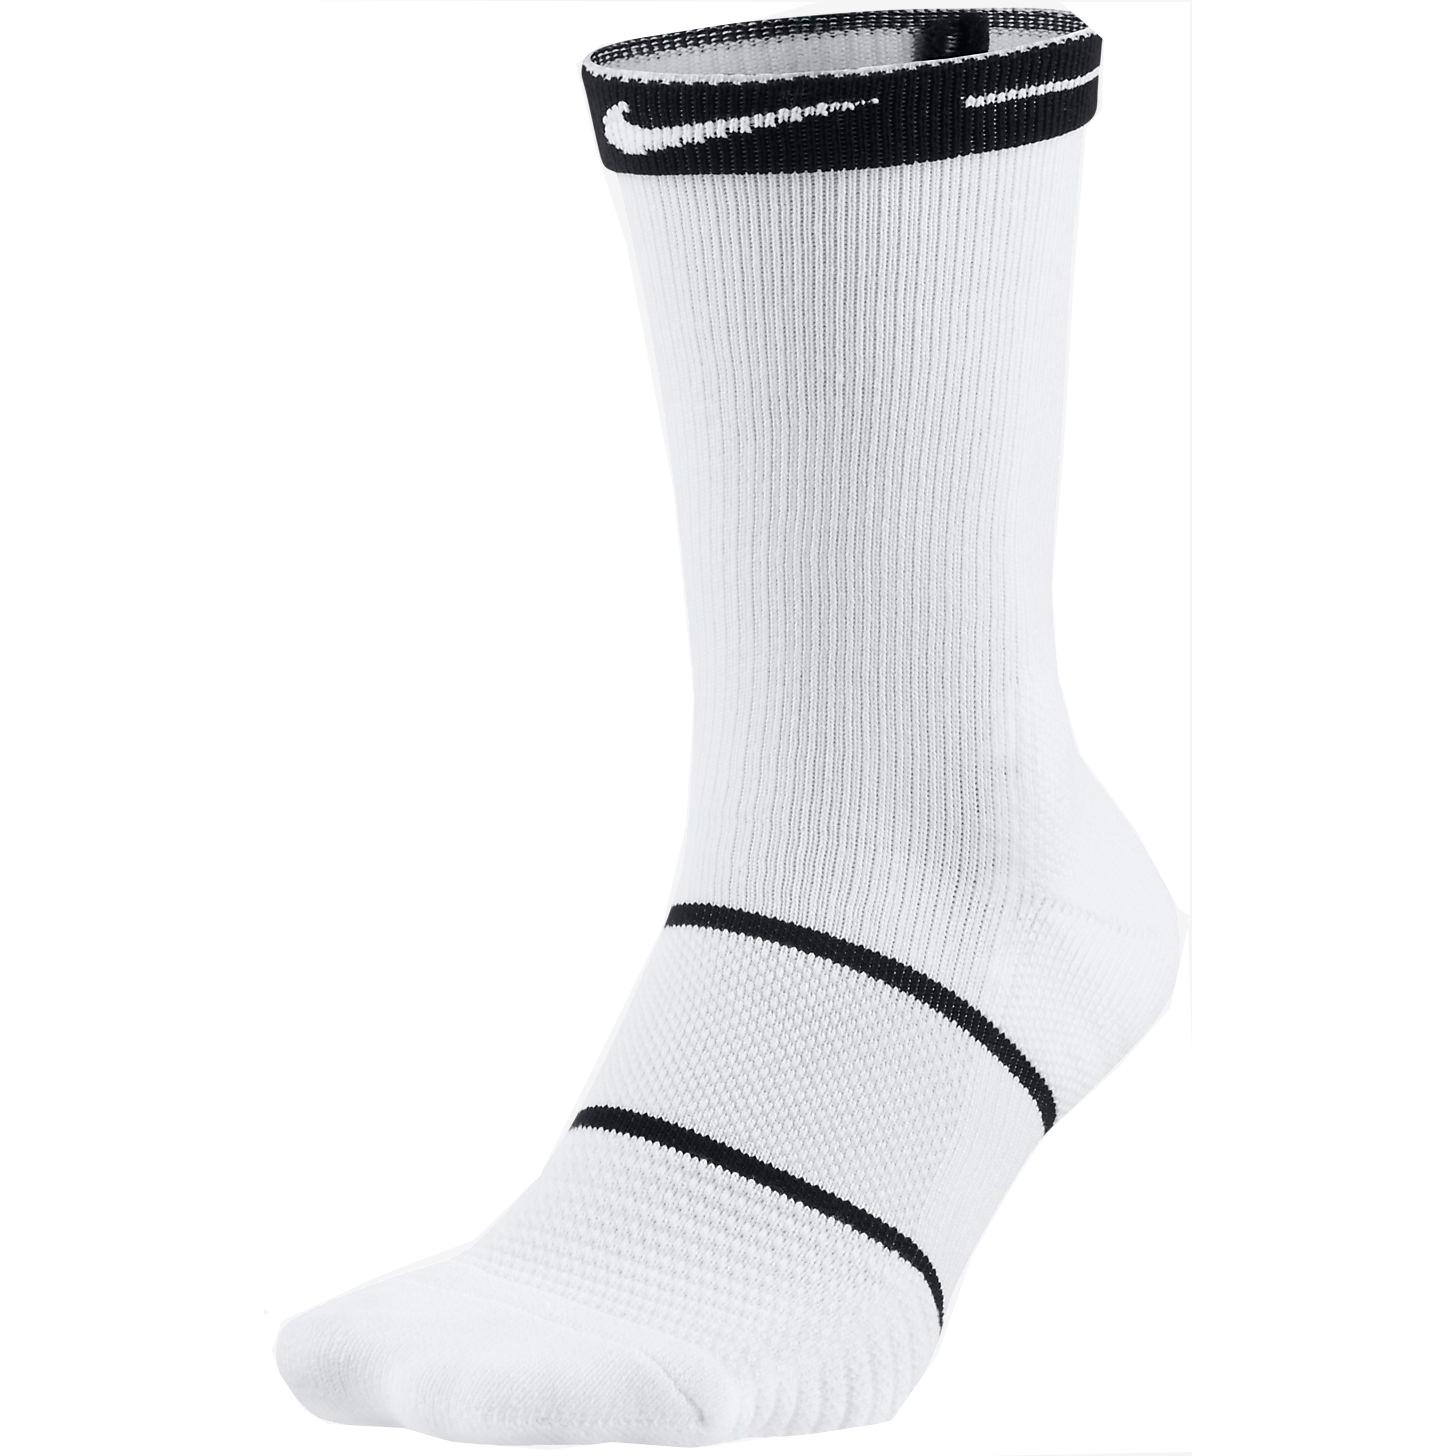 Nike Essential Crew Socks (1 Pair) - White/Black - Tennisnuts.com